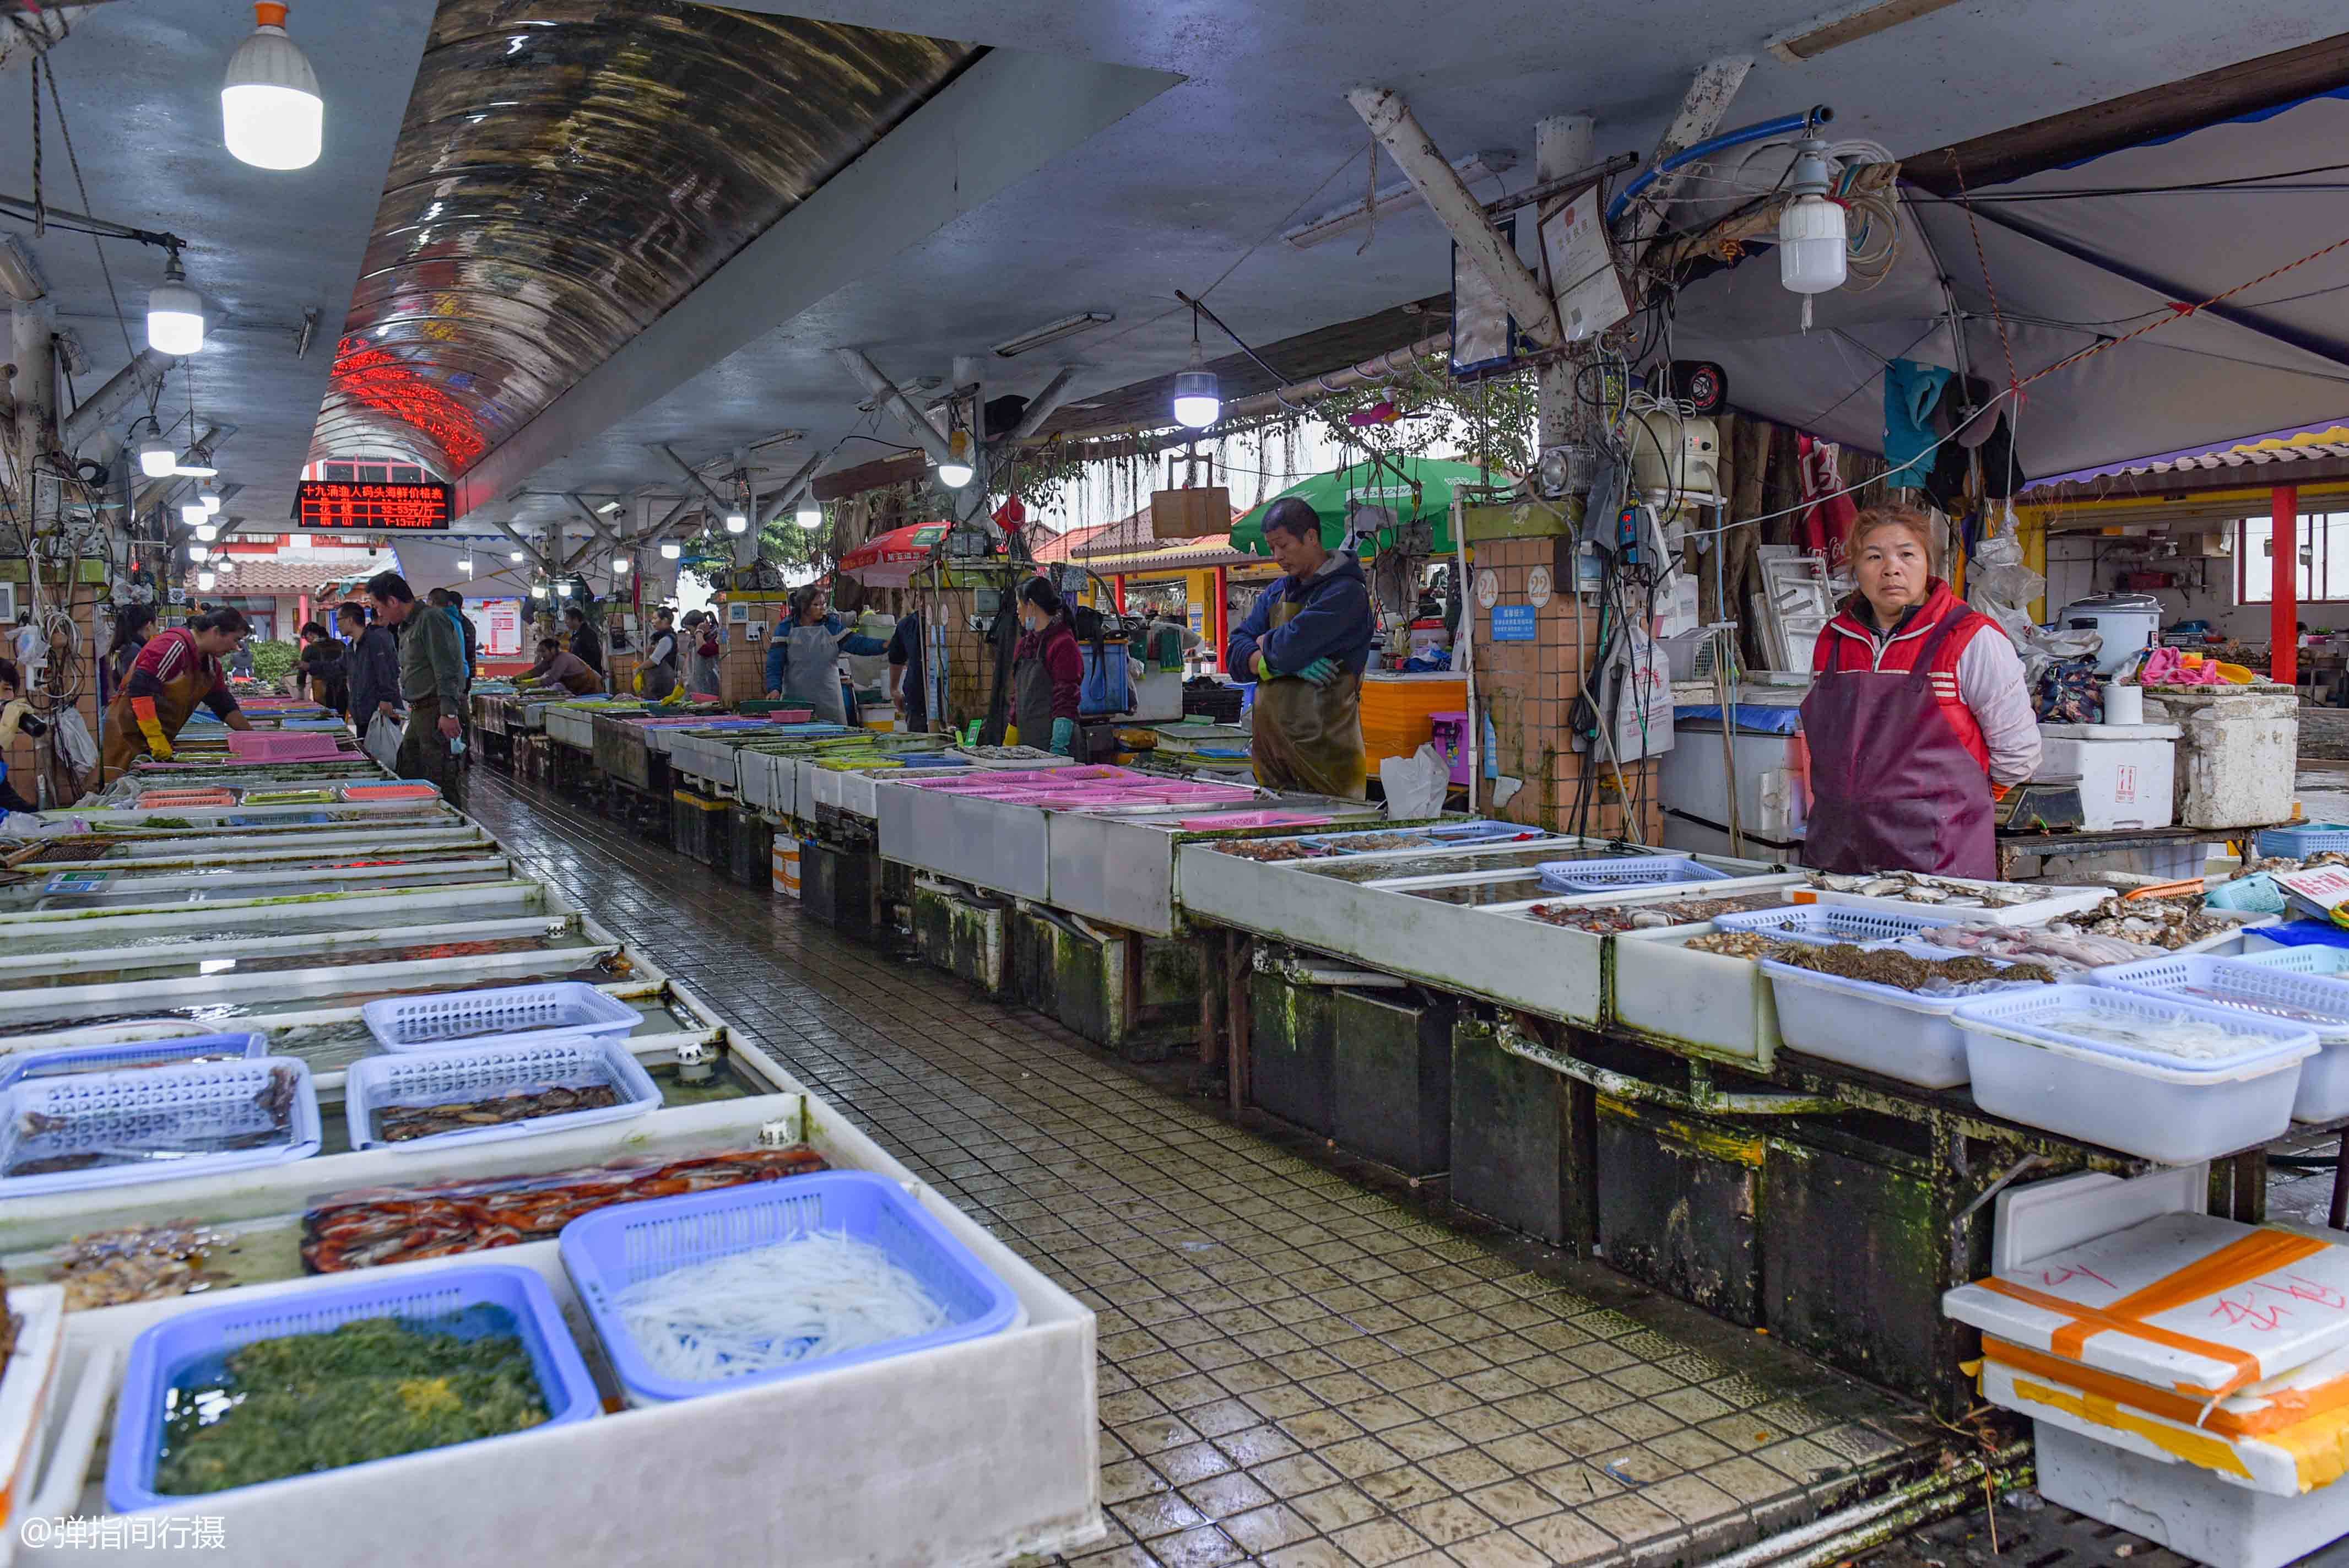 广州南沙有个非正式景点,因美食而走红,盛产海鲜和香蕉